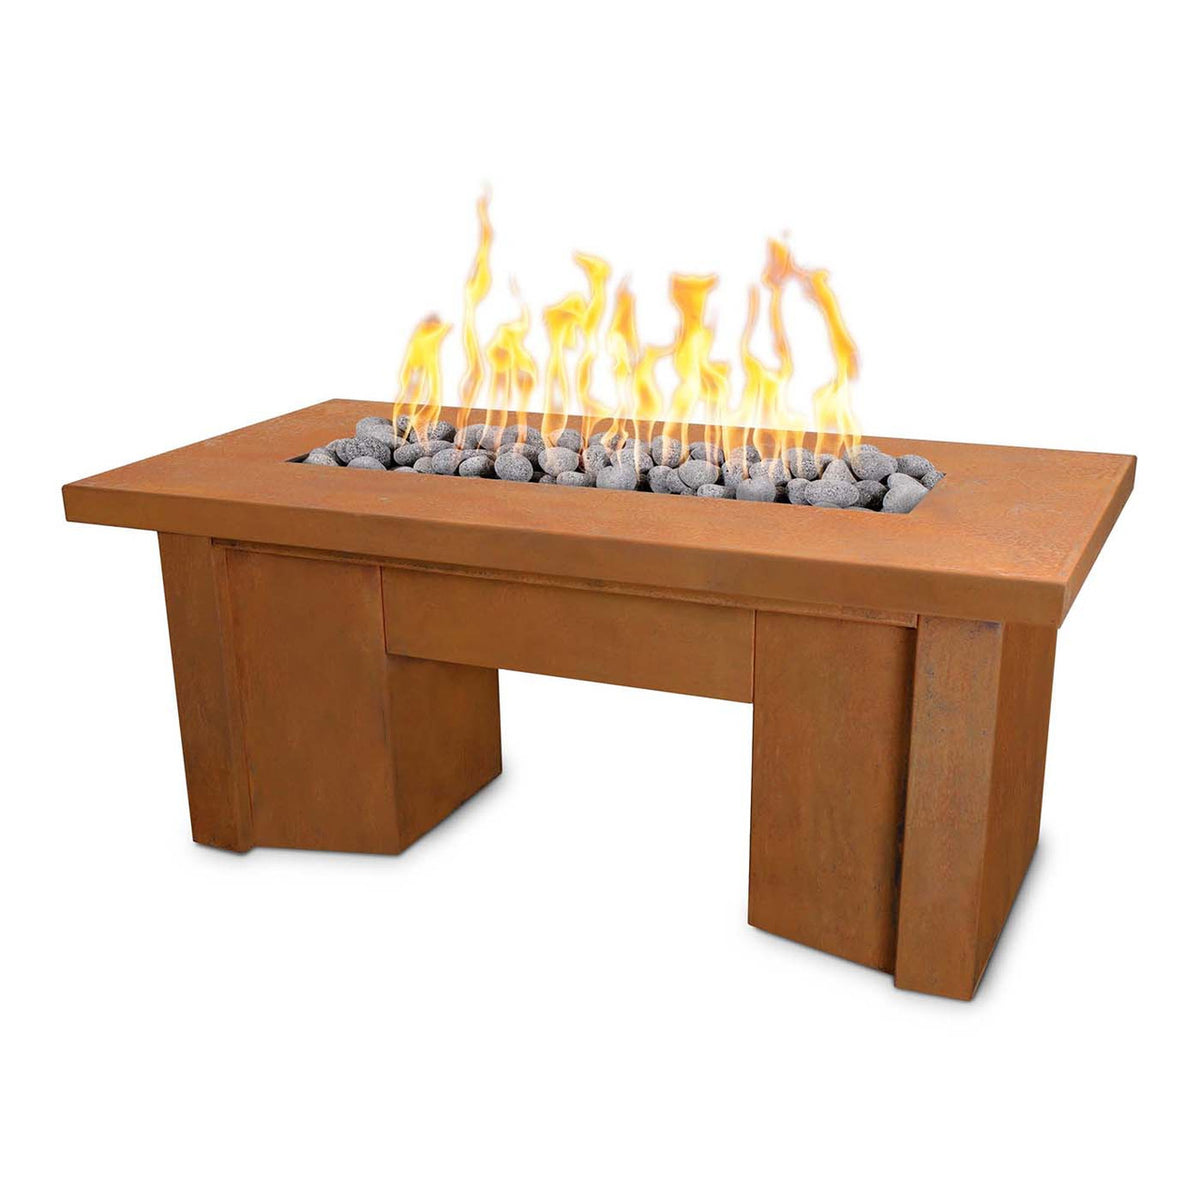 The Outdoor Plus Rectangular Corten Steel Alameda Fire Table